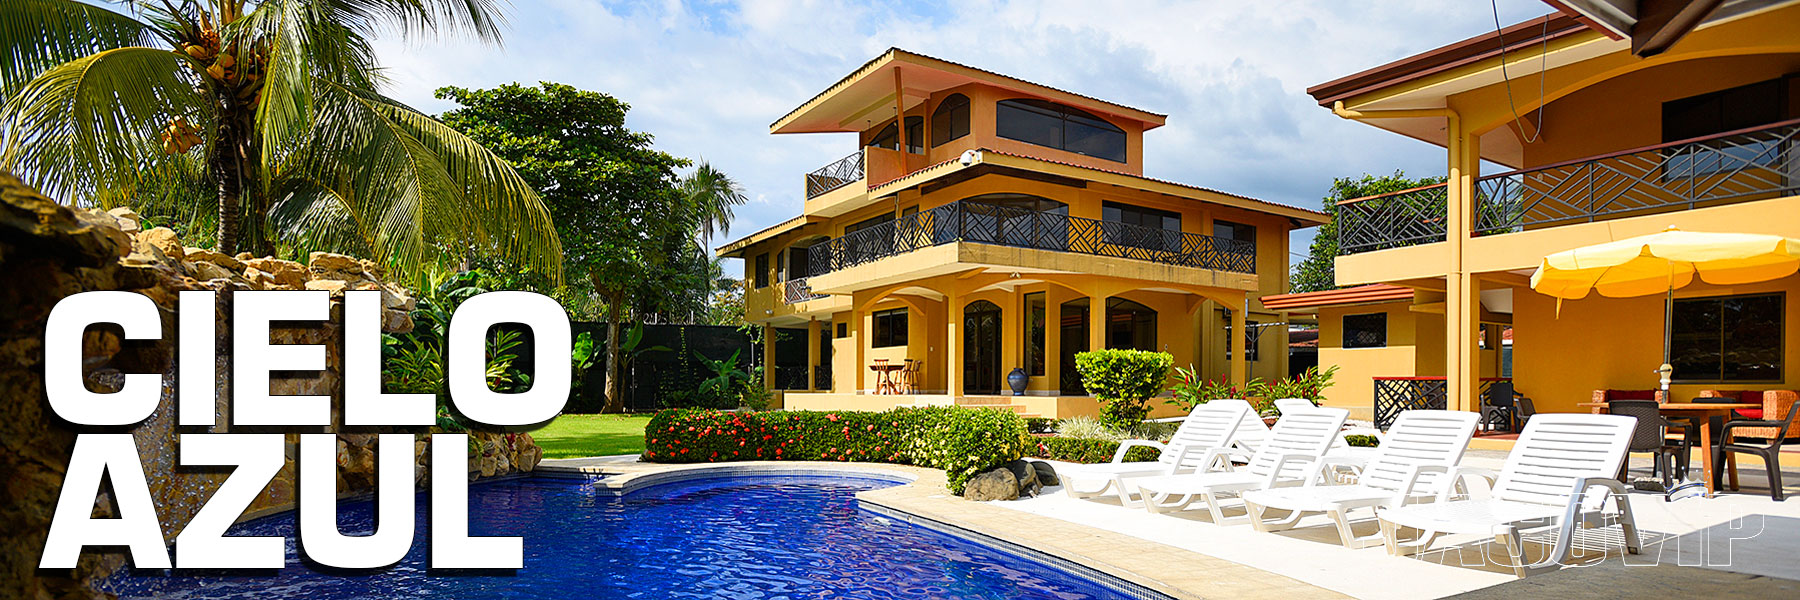 Cielo Azul Costa Rica Vacation Rental Villa in Jaco Center